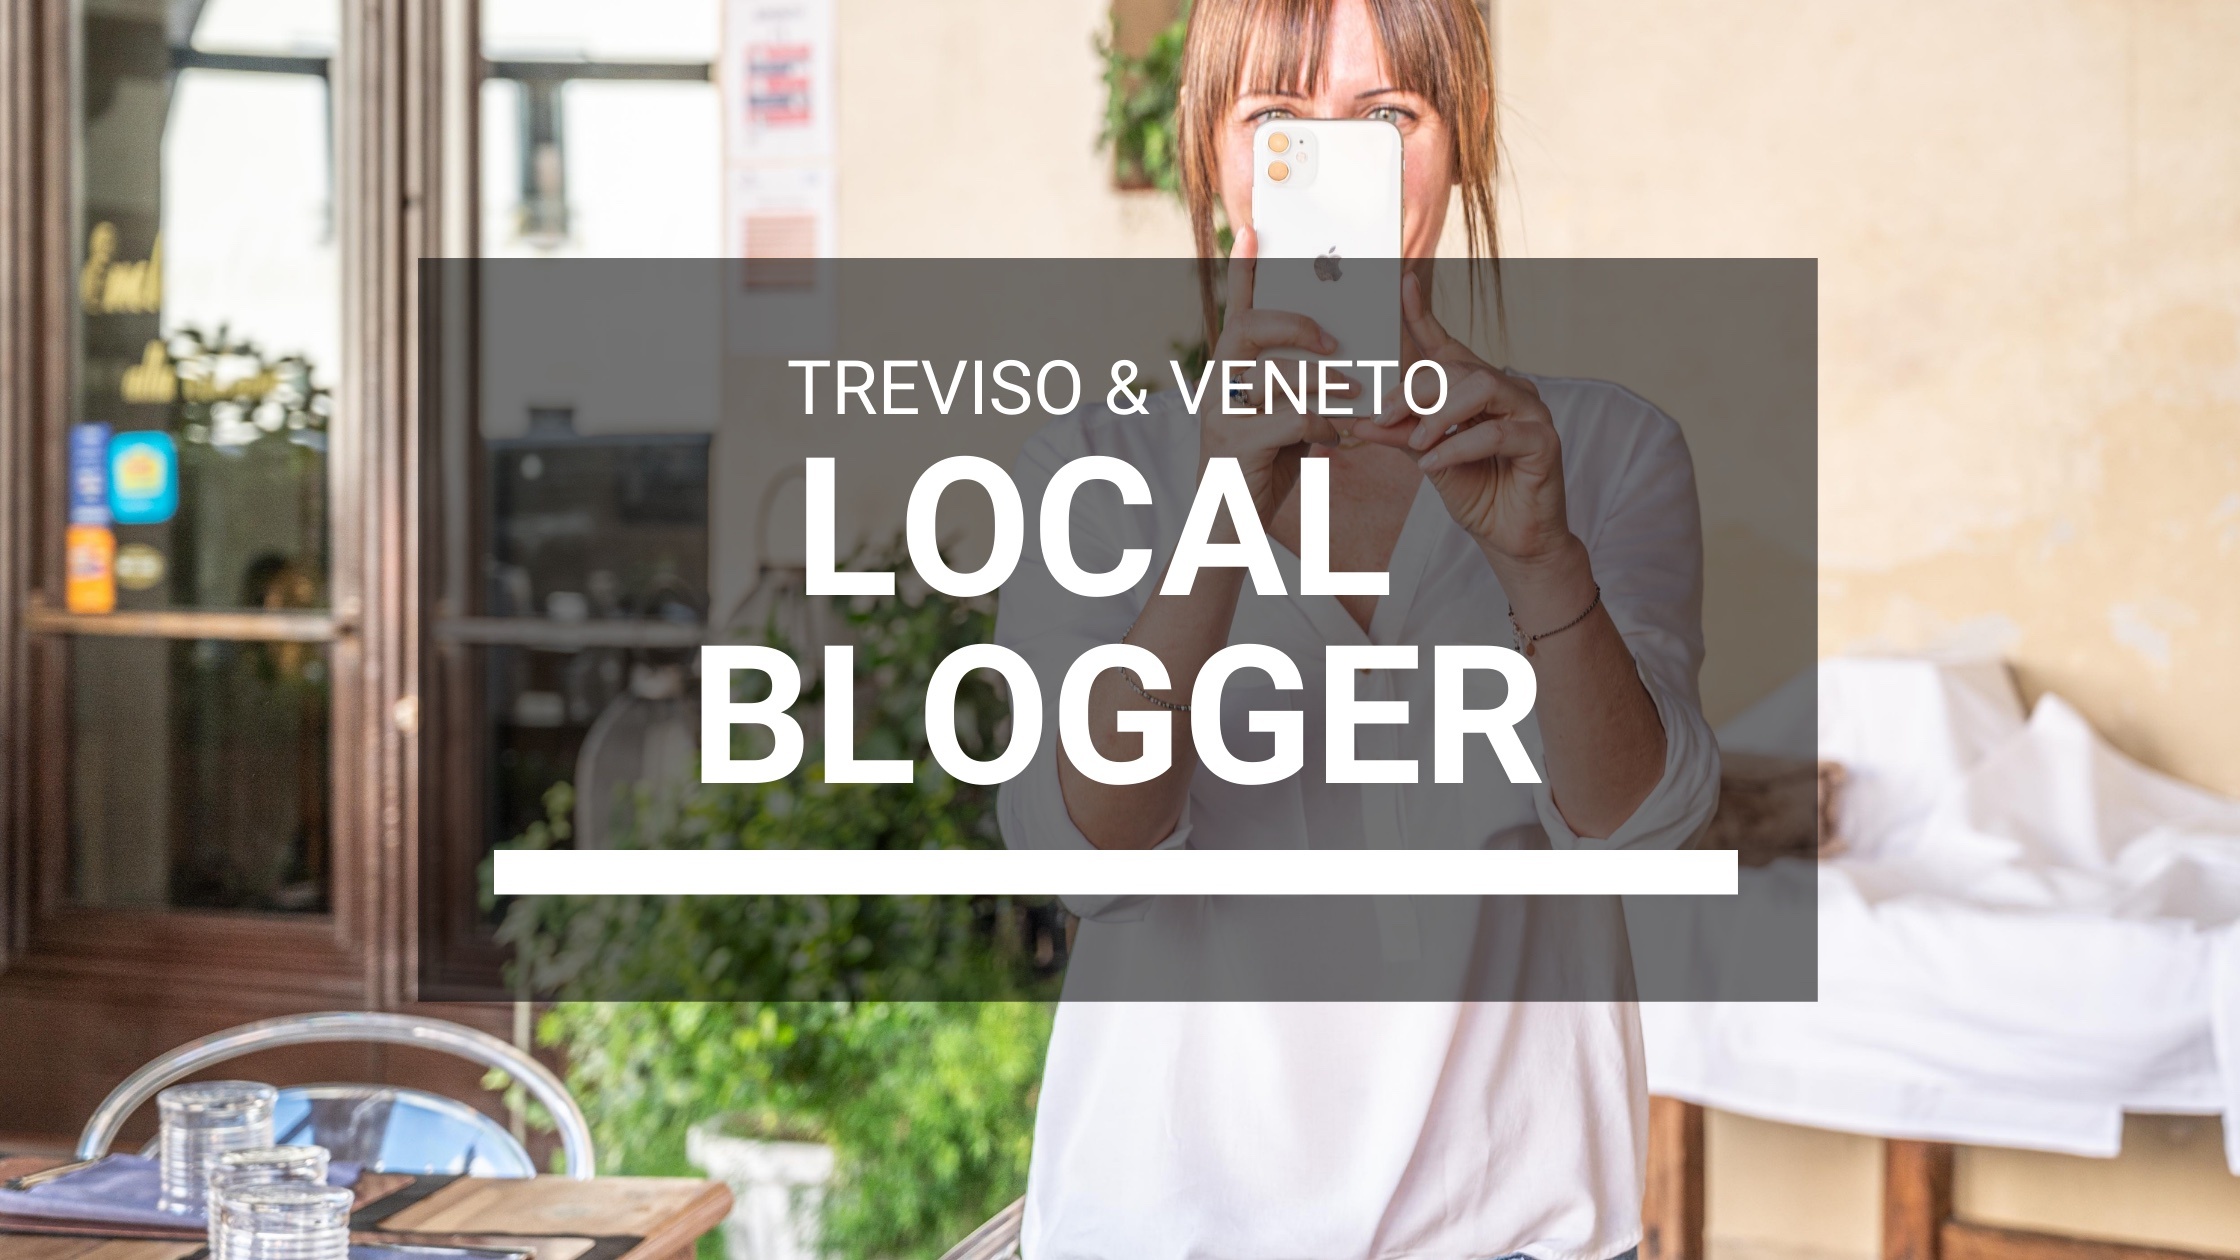 Local Blogger a Treviso e Veneto